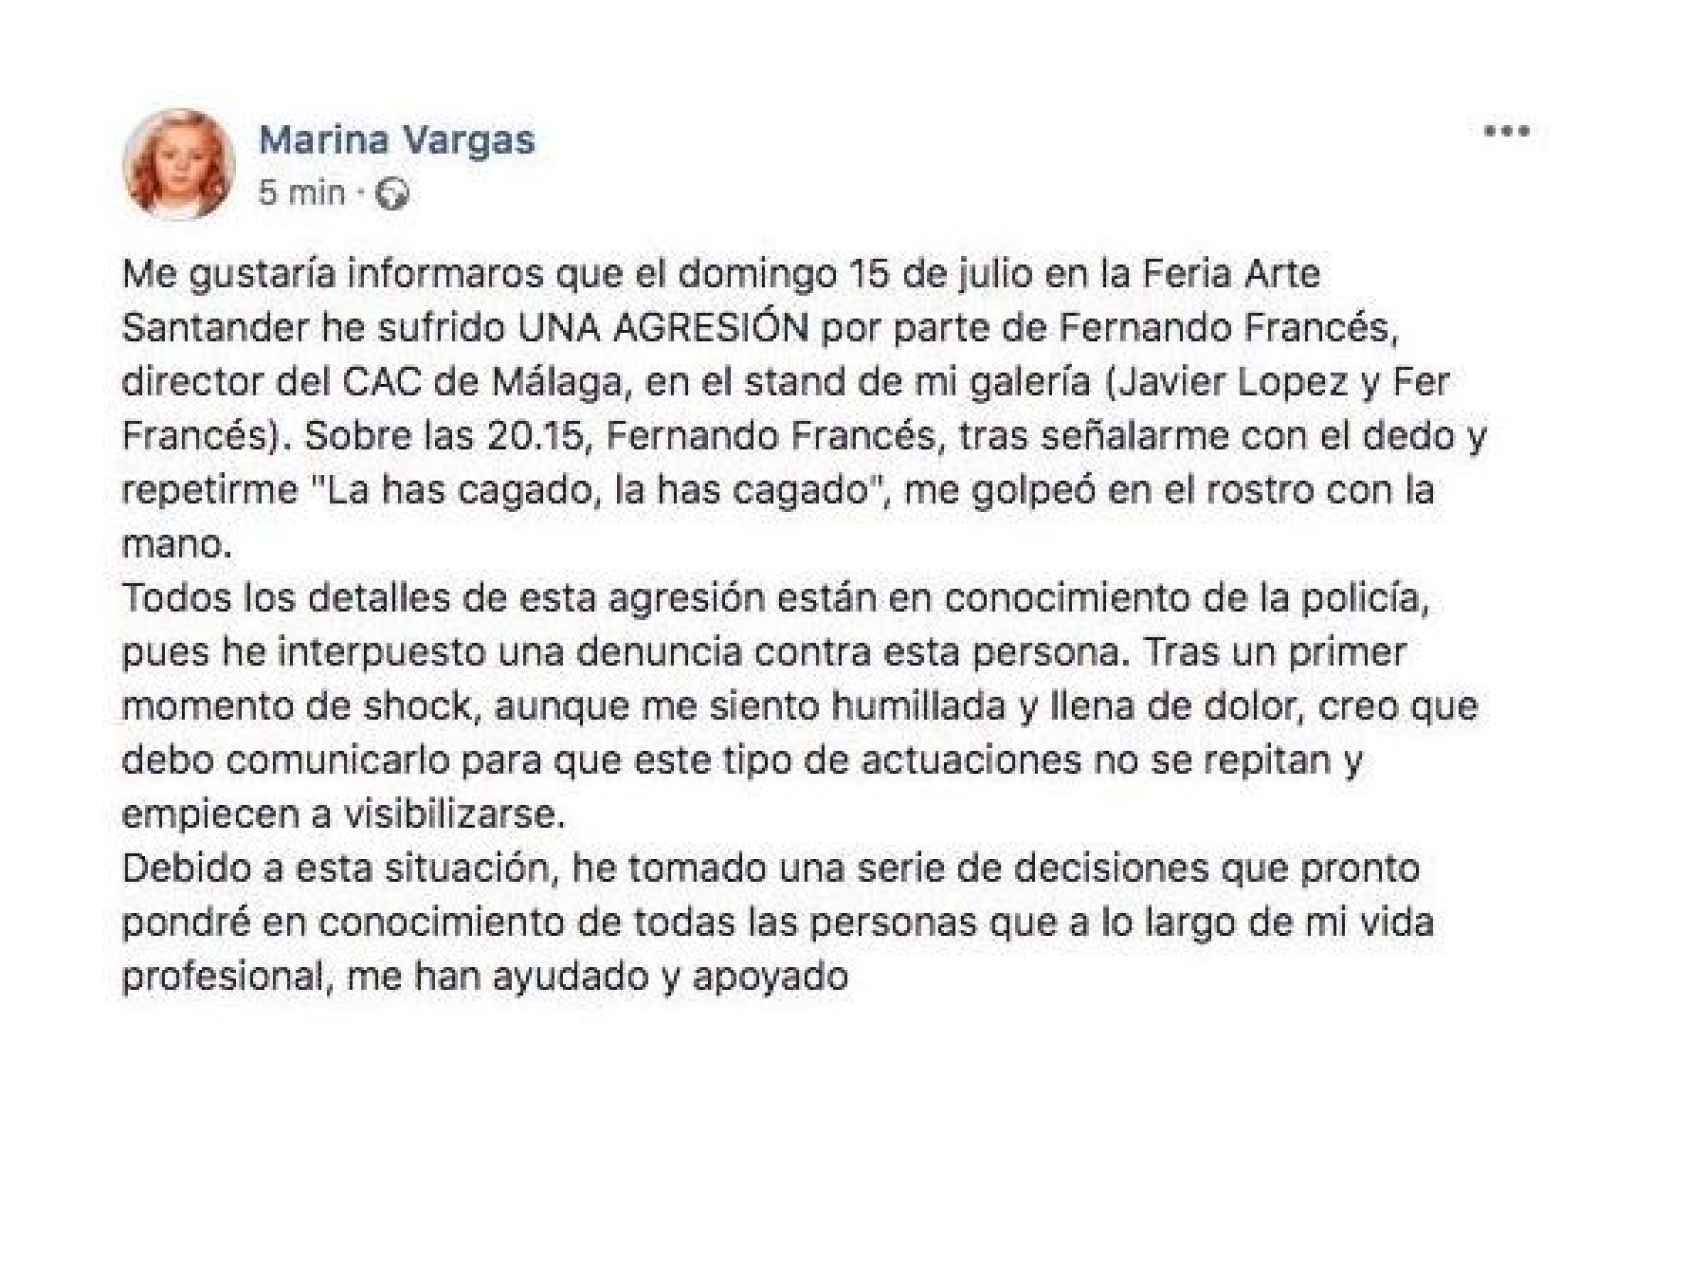 El texto publicado por Marina Vargas en su muro de Facebook.